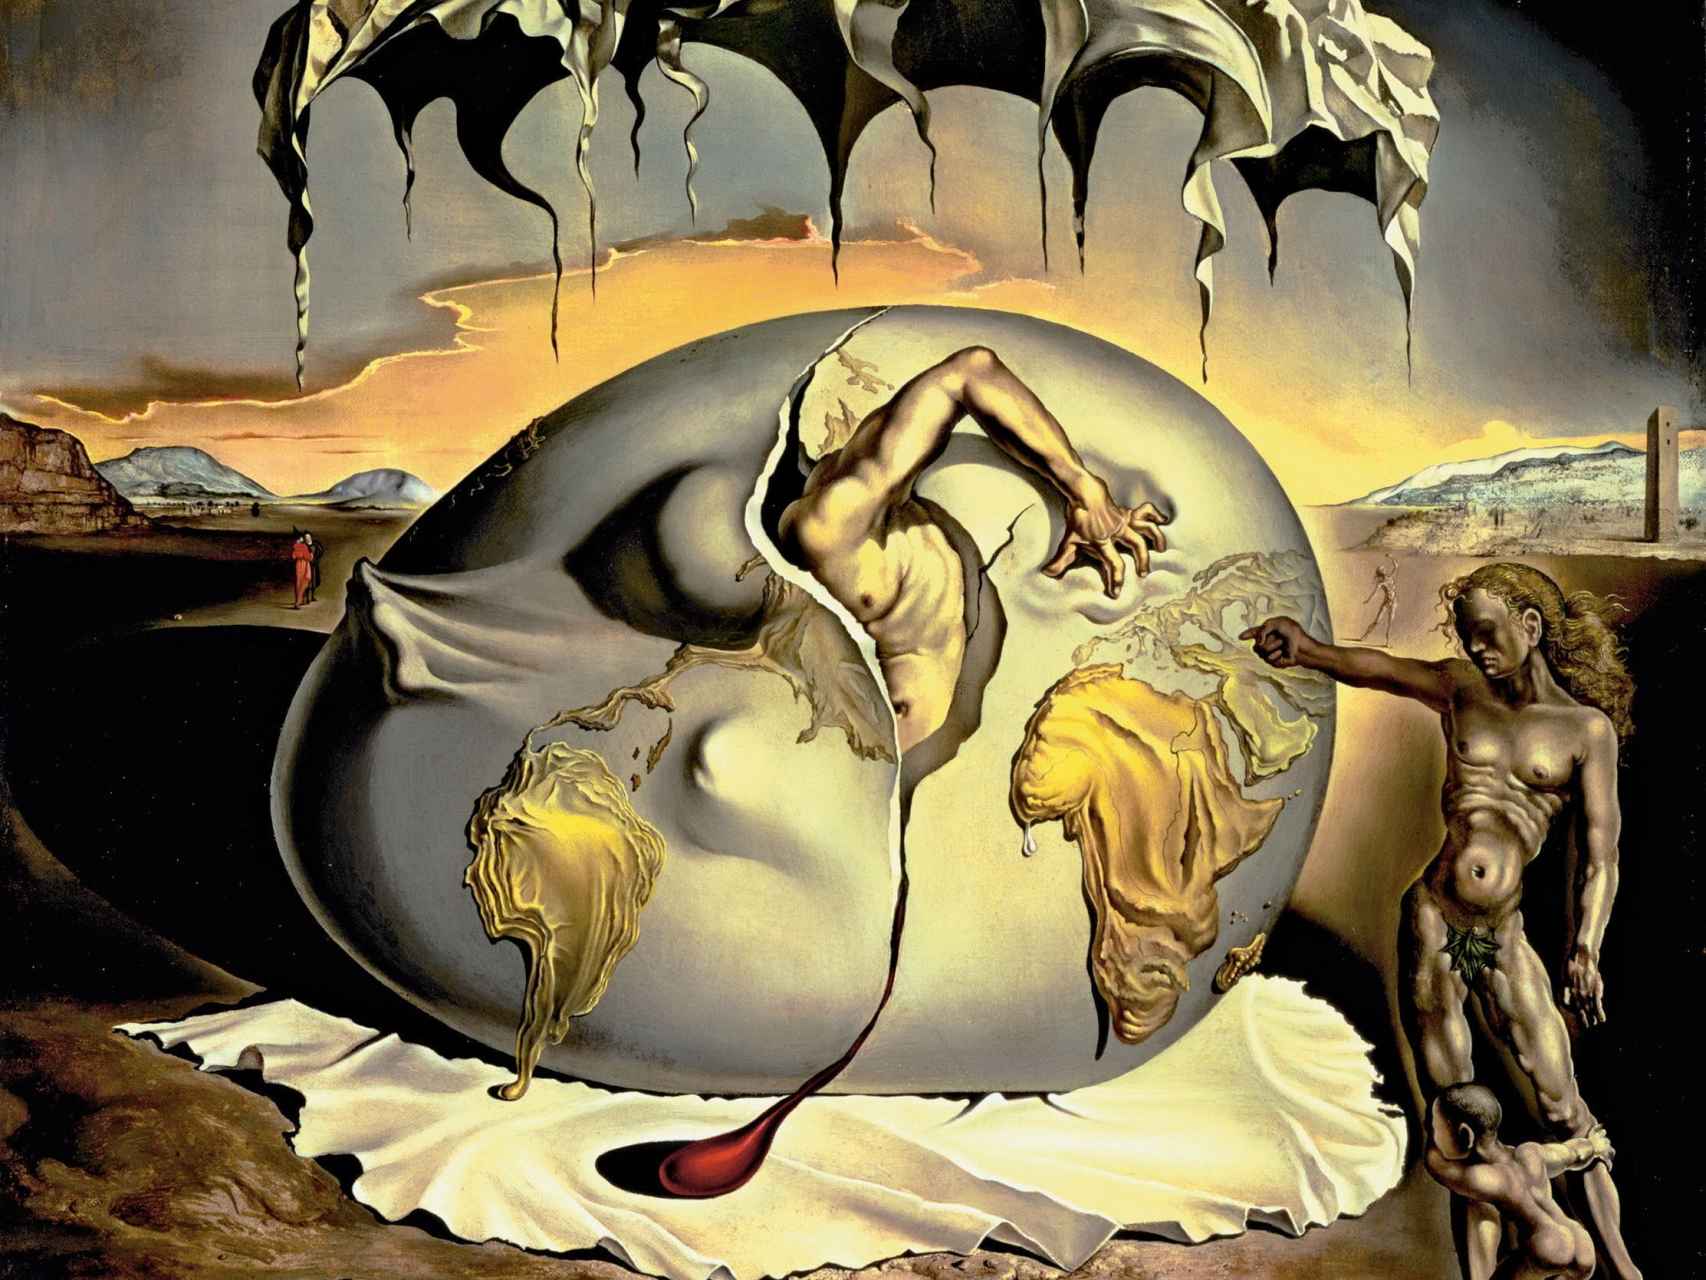 Niño geopolítico mirando el nacimiento del hombre nuevo (Salvador Dalí, 1943)